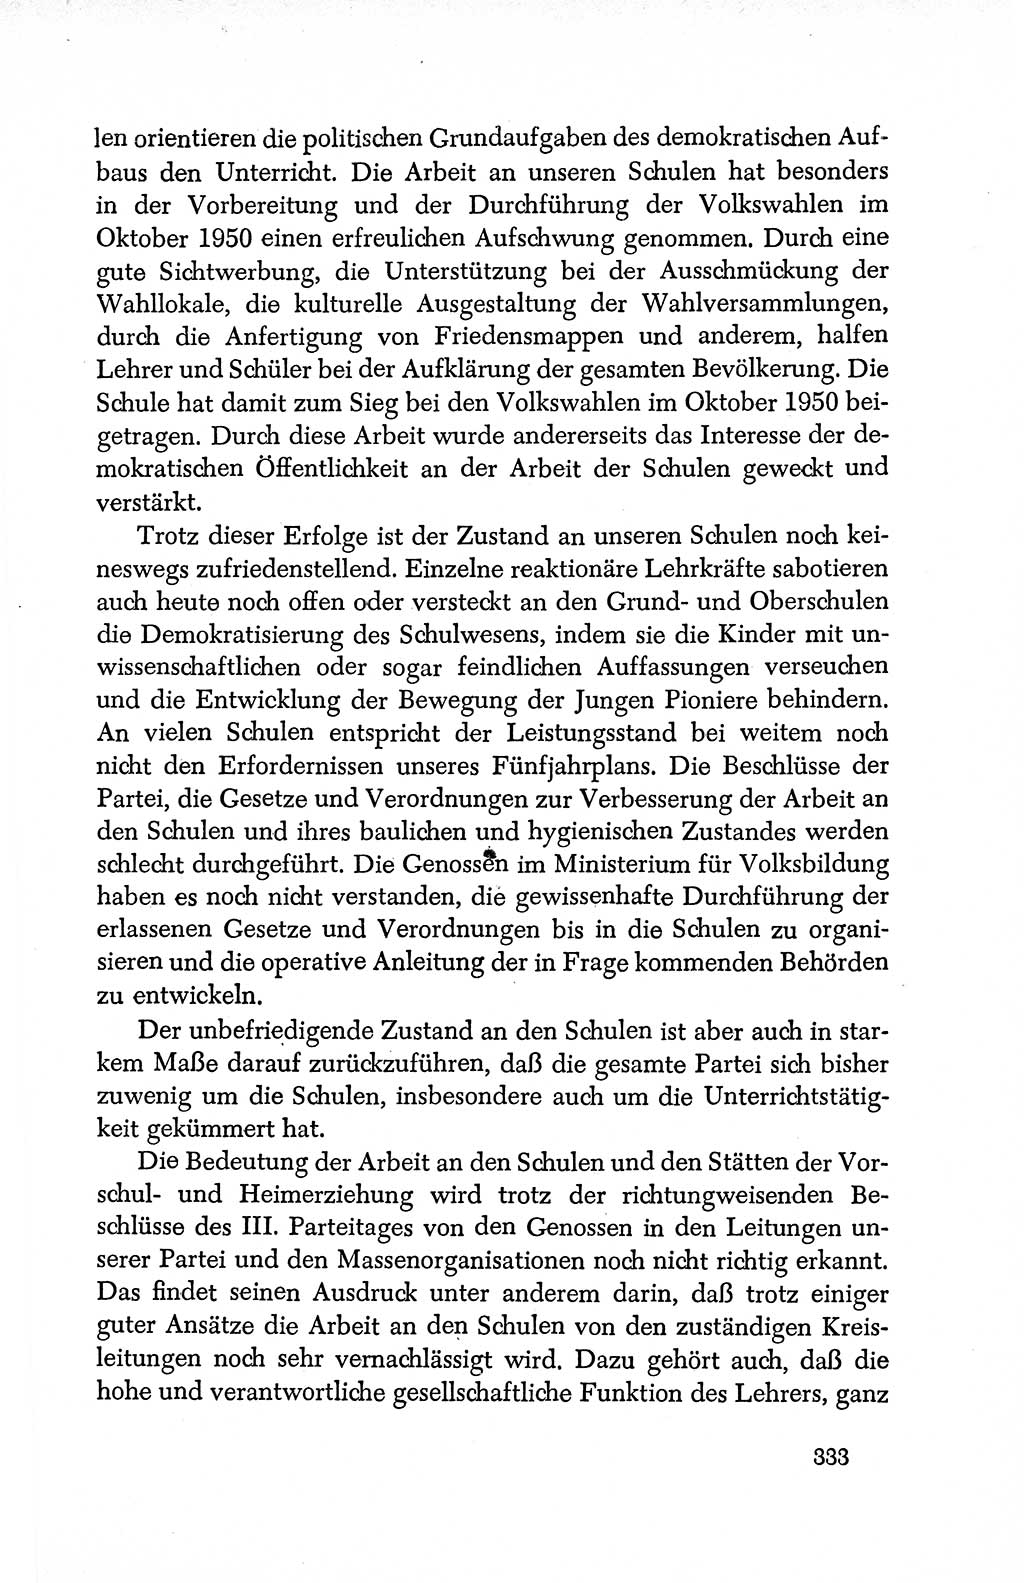 Dokumente der Sozialistischen Einheitspartei Deutschlands (SED) [Deutsche Demokratische Republik (DDR)] 1950-1952, Seite 333 (Dok. SED DDR 1950-1952, S. 333)